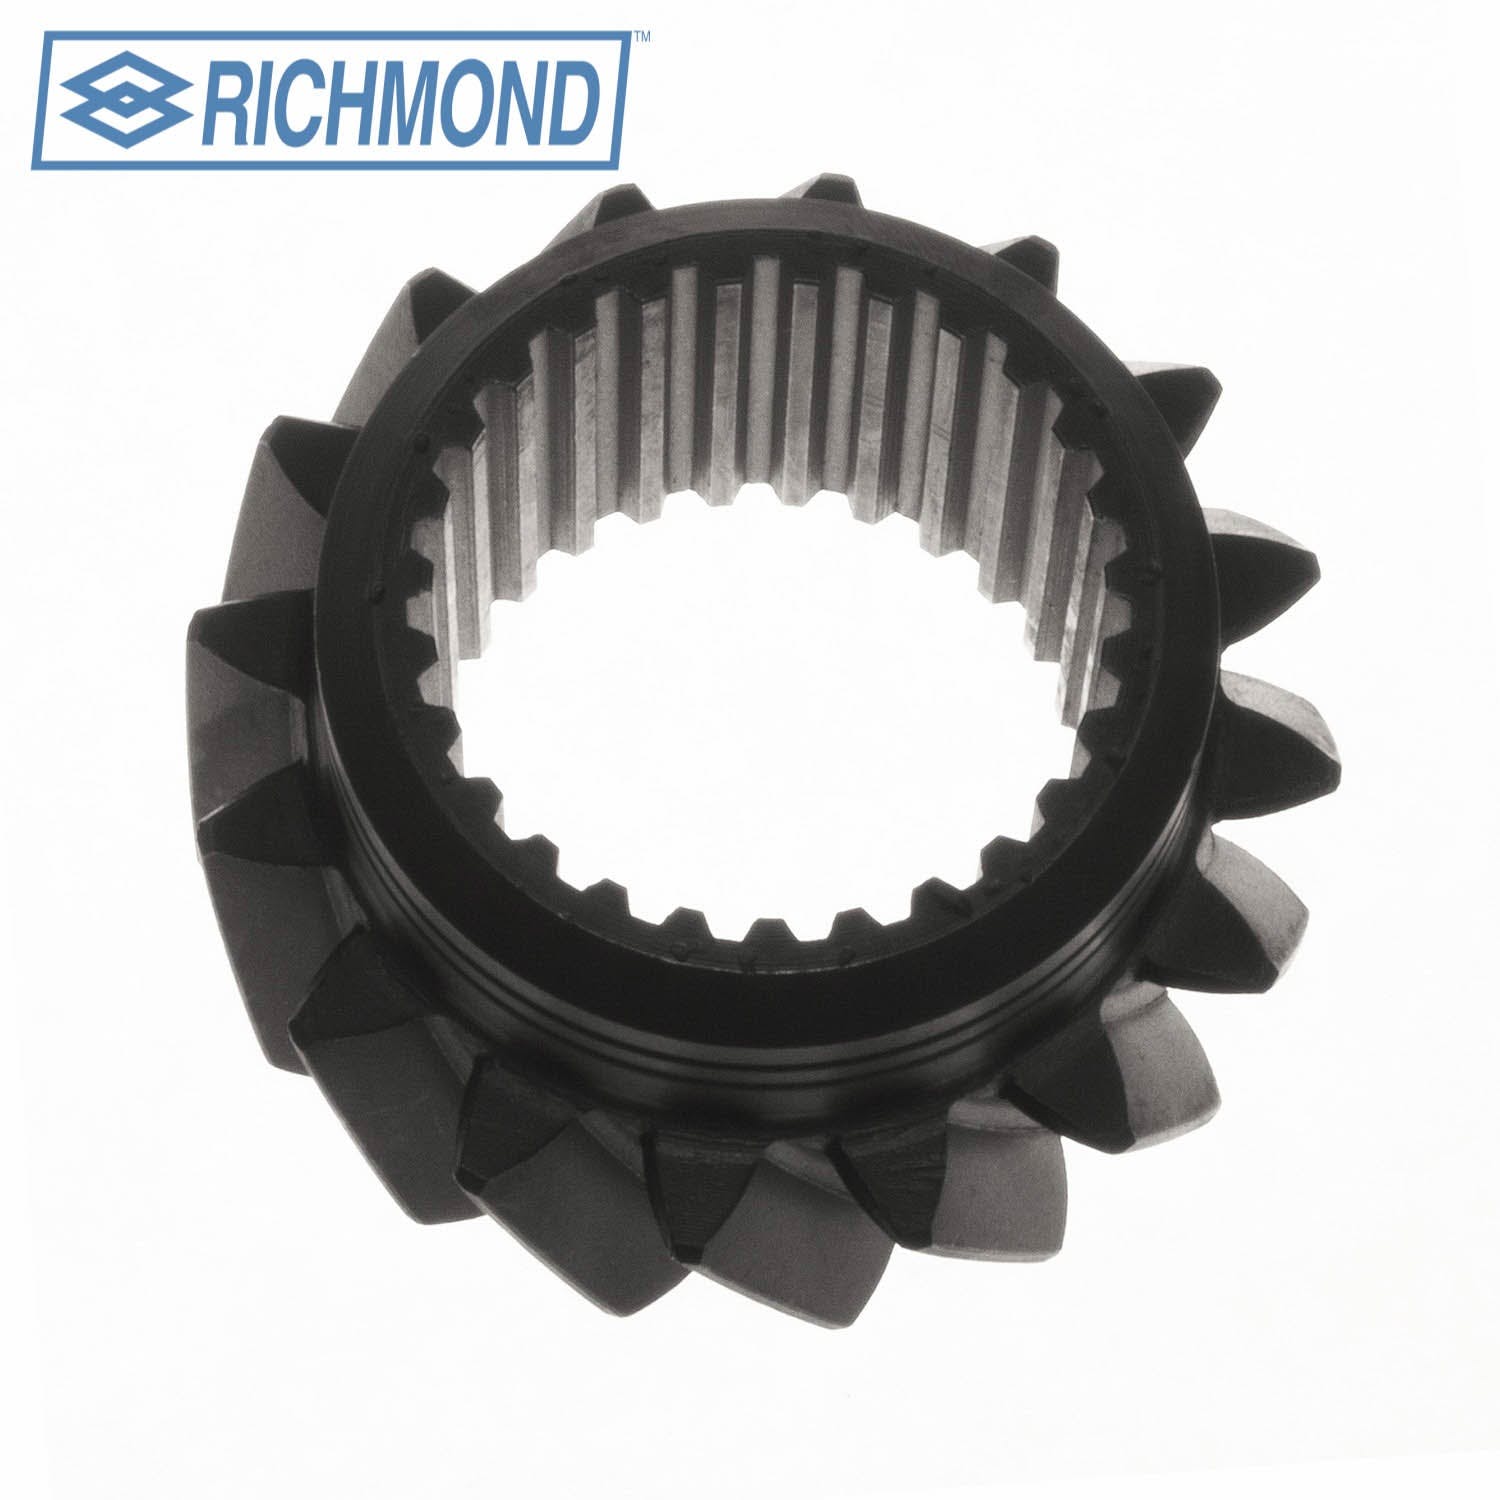 Richmond 1304084005 Front Rev Idler Gear 16T (W,S,CC,X,Y)